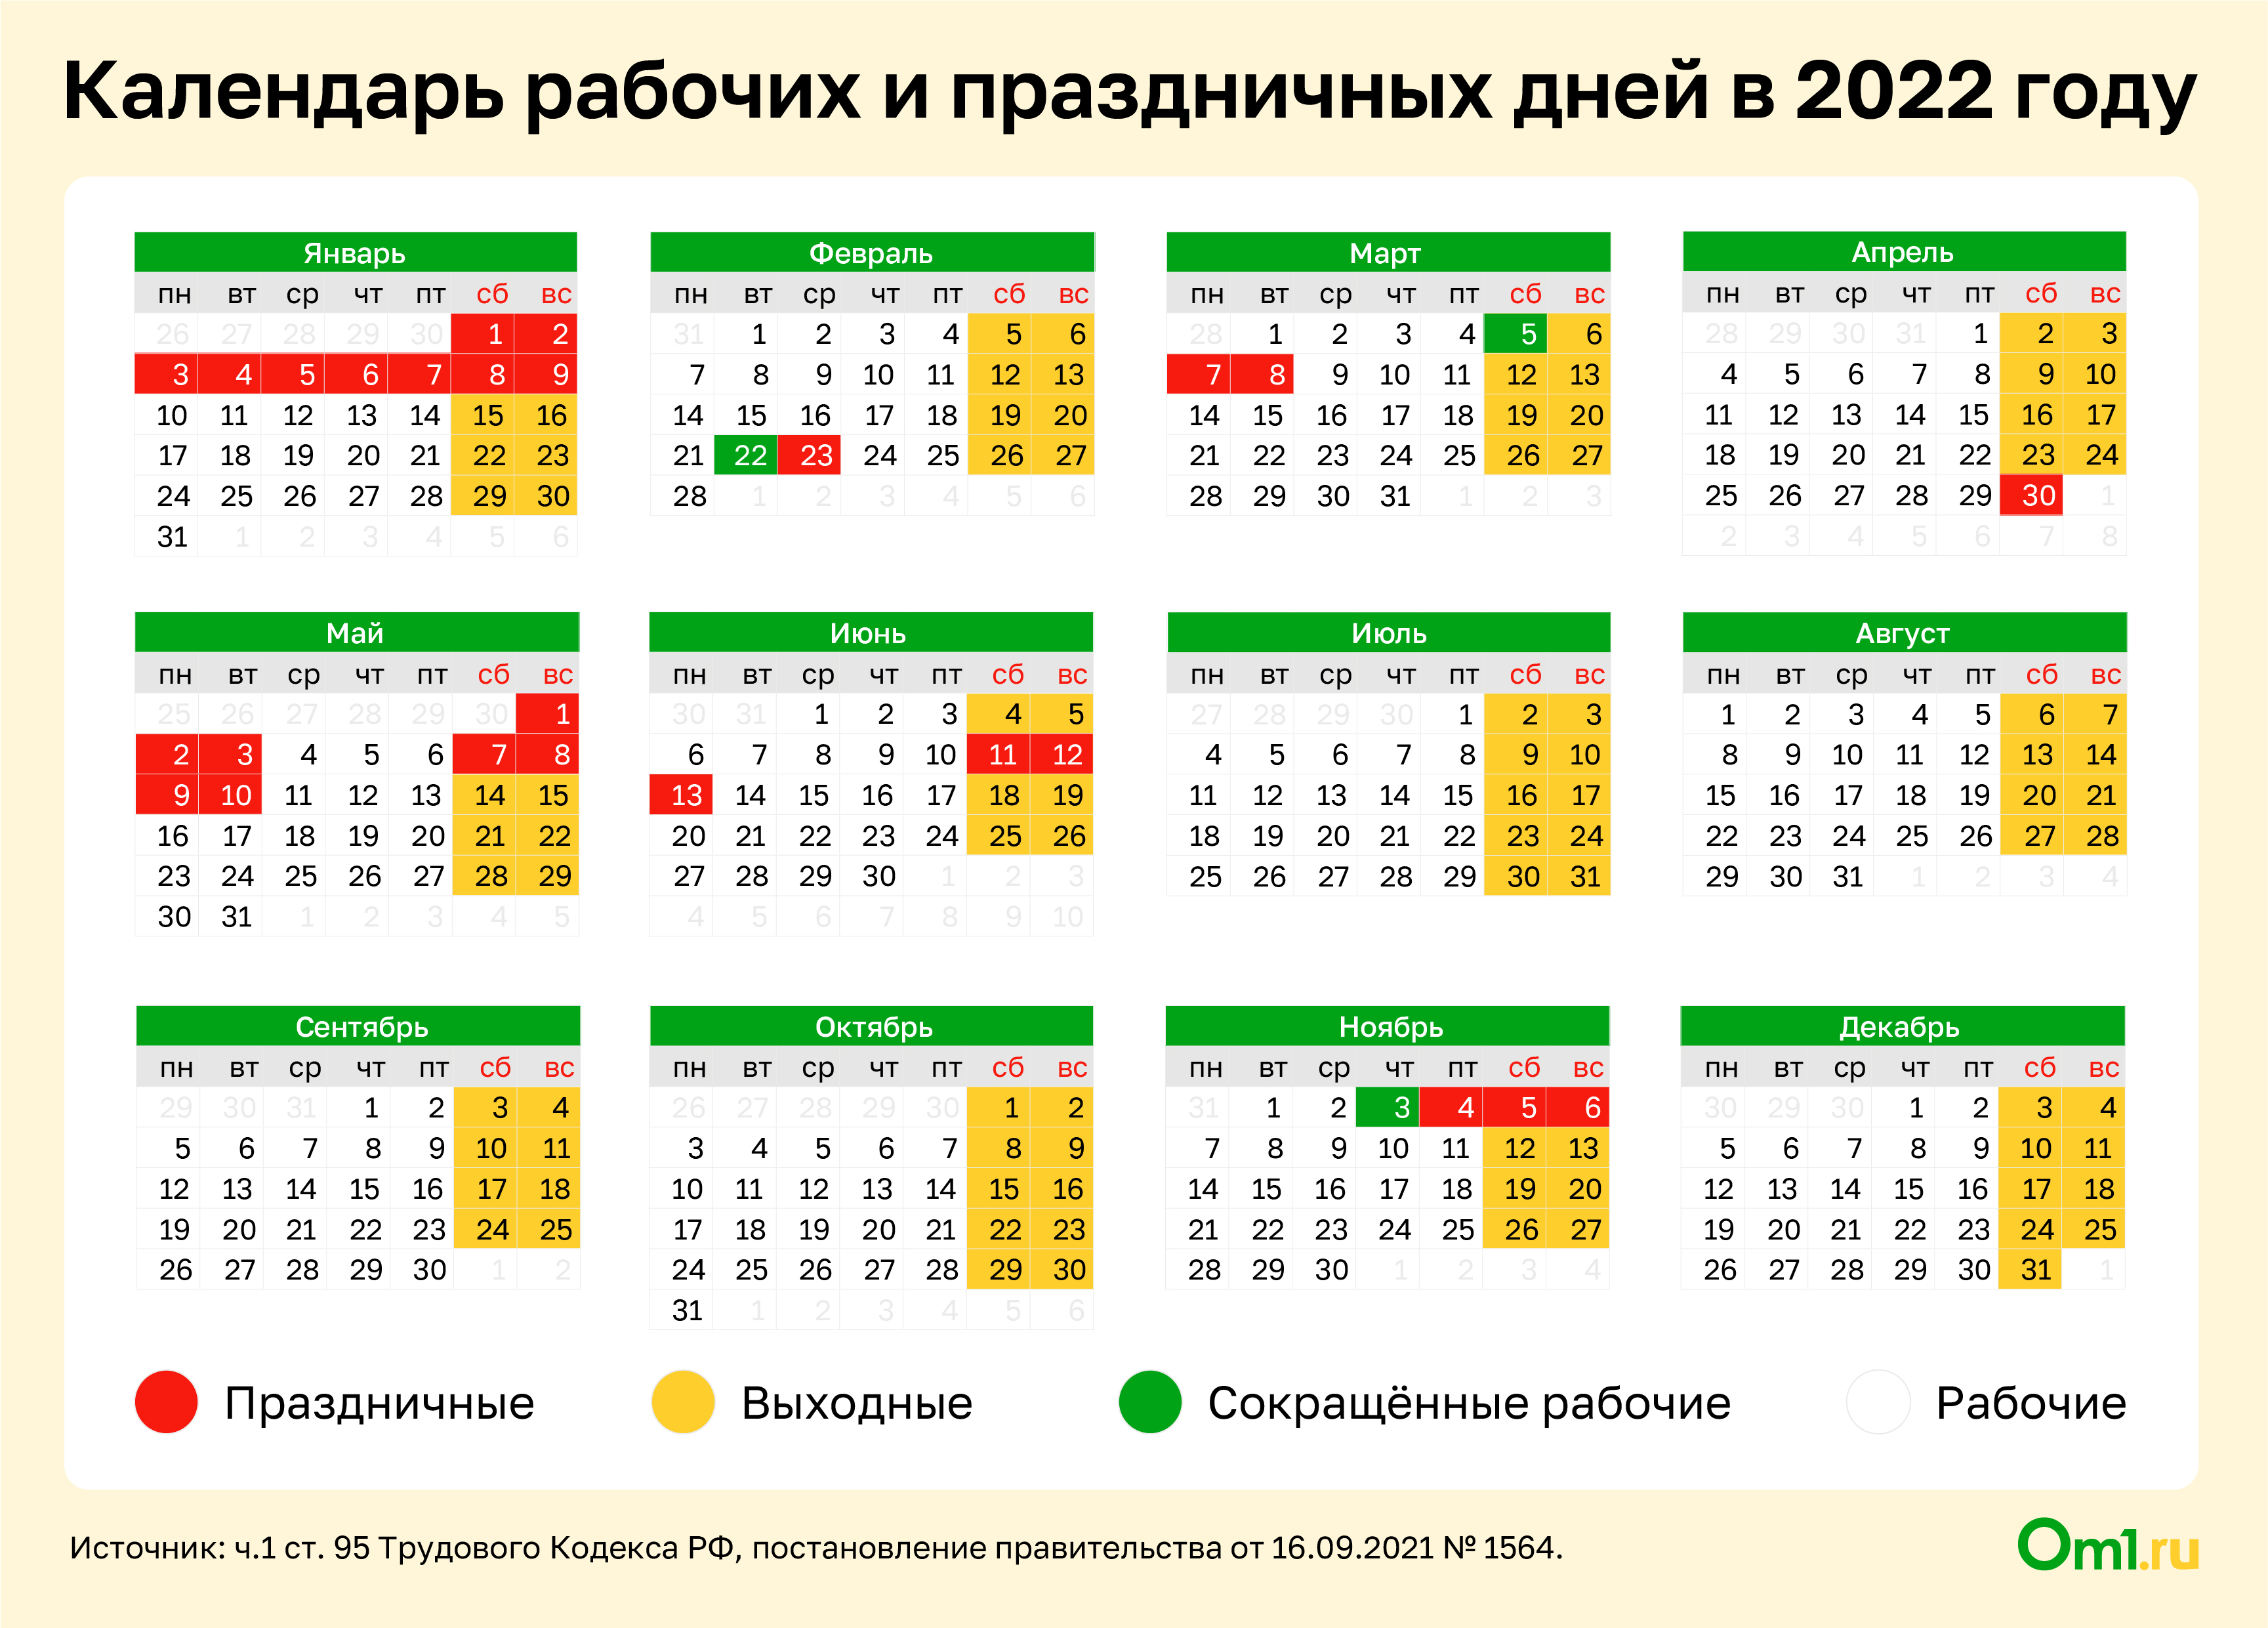 Выходные в марте в честь выборов. Календарь на 2022 год с праздниками и выходными выходные снизу. Выходные и праздники 2022 года в России нерабочие дни. Выходные и праздничные дни в феврале 2022 года в России. Выходные и праздничные дни в 2022 году в России.